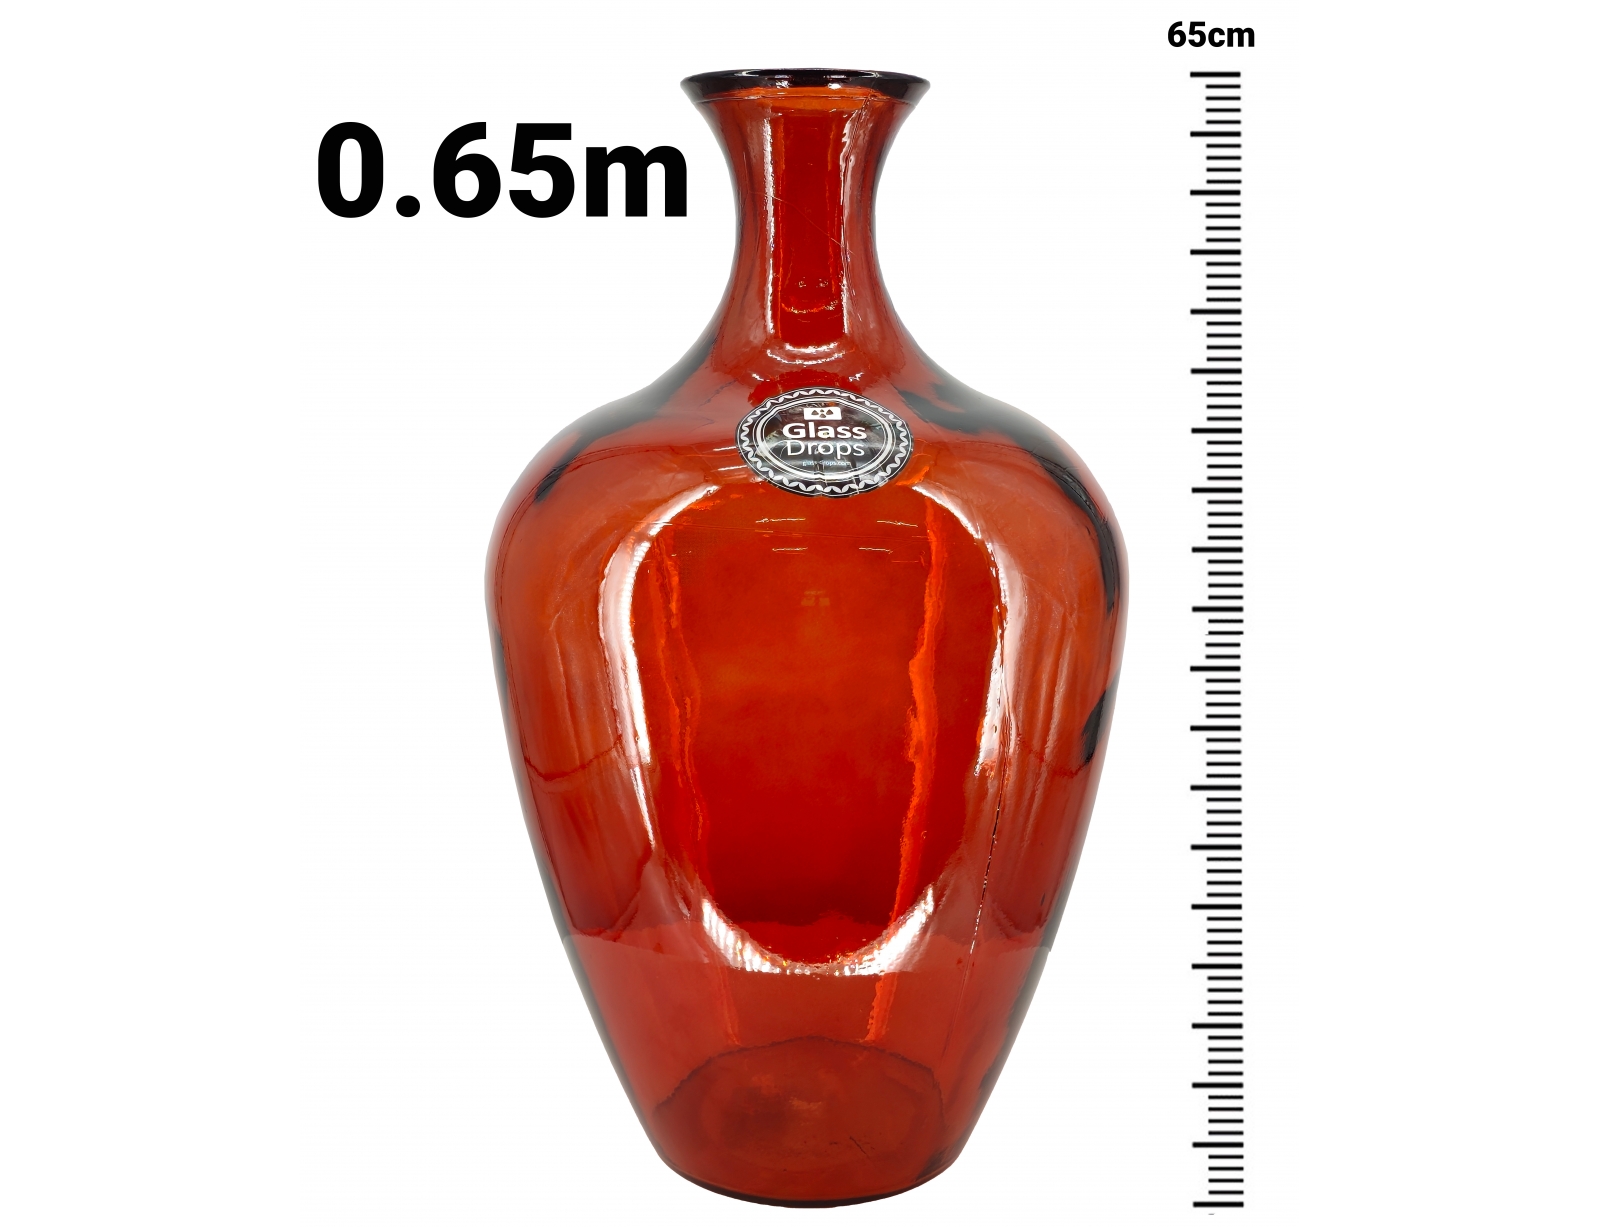 Εικόνα Διακοσμητικό Βάζο Glass Drops Cherry Cream Tradicional (4783DB343) Από ανακυκλωμένο γυαλί, Χωρητικότητας 39L, Διαστάσεων Ø 40 x Υ 65cm, Pumpkin